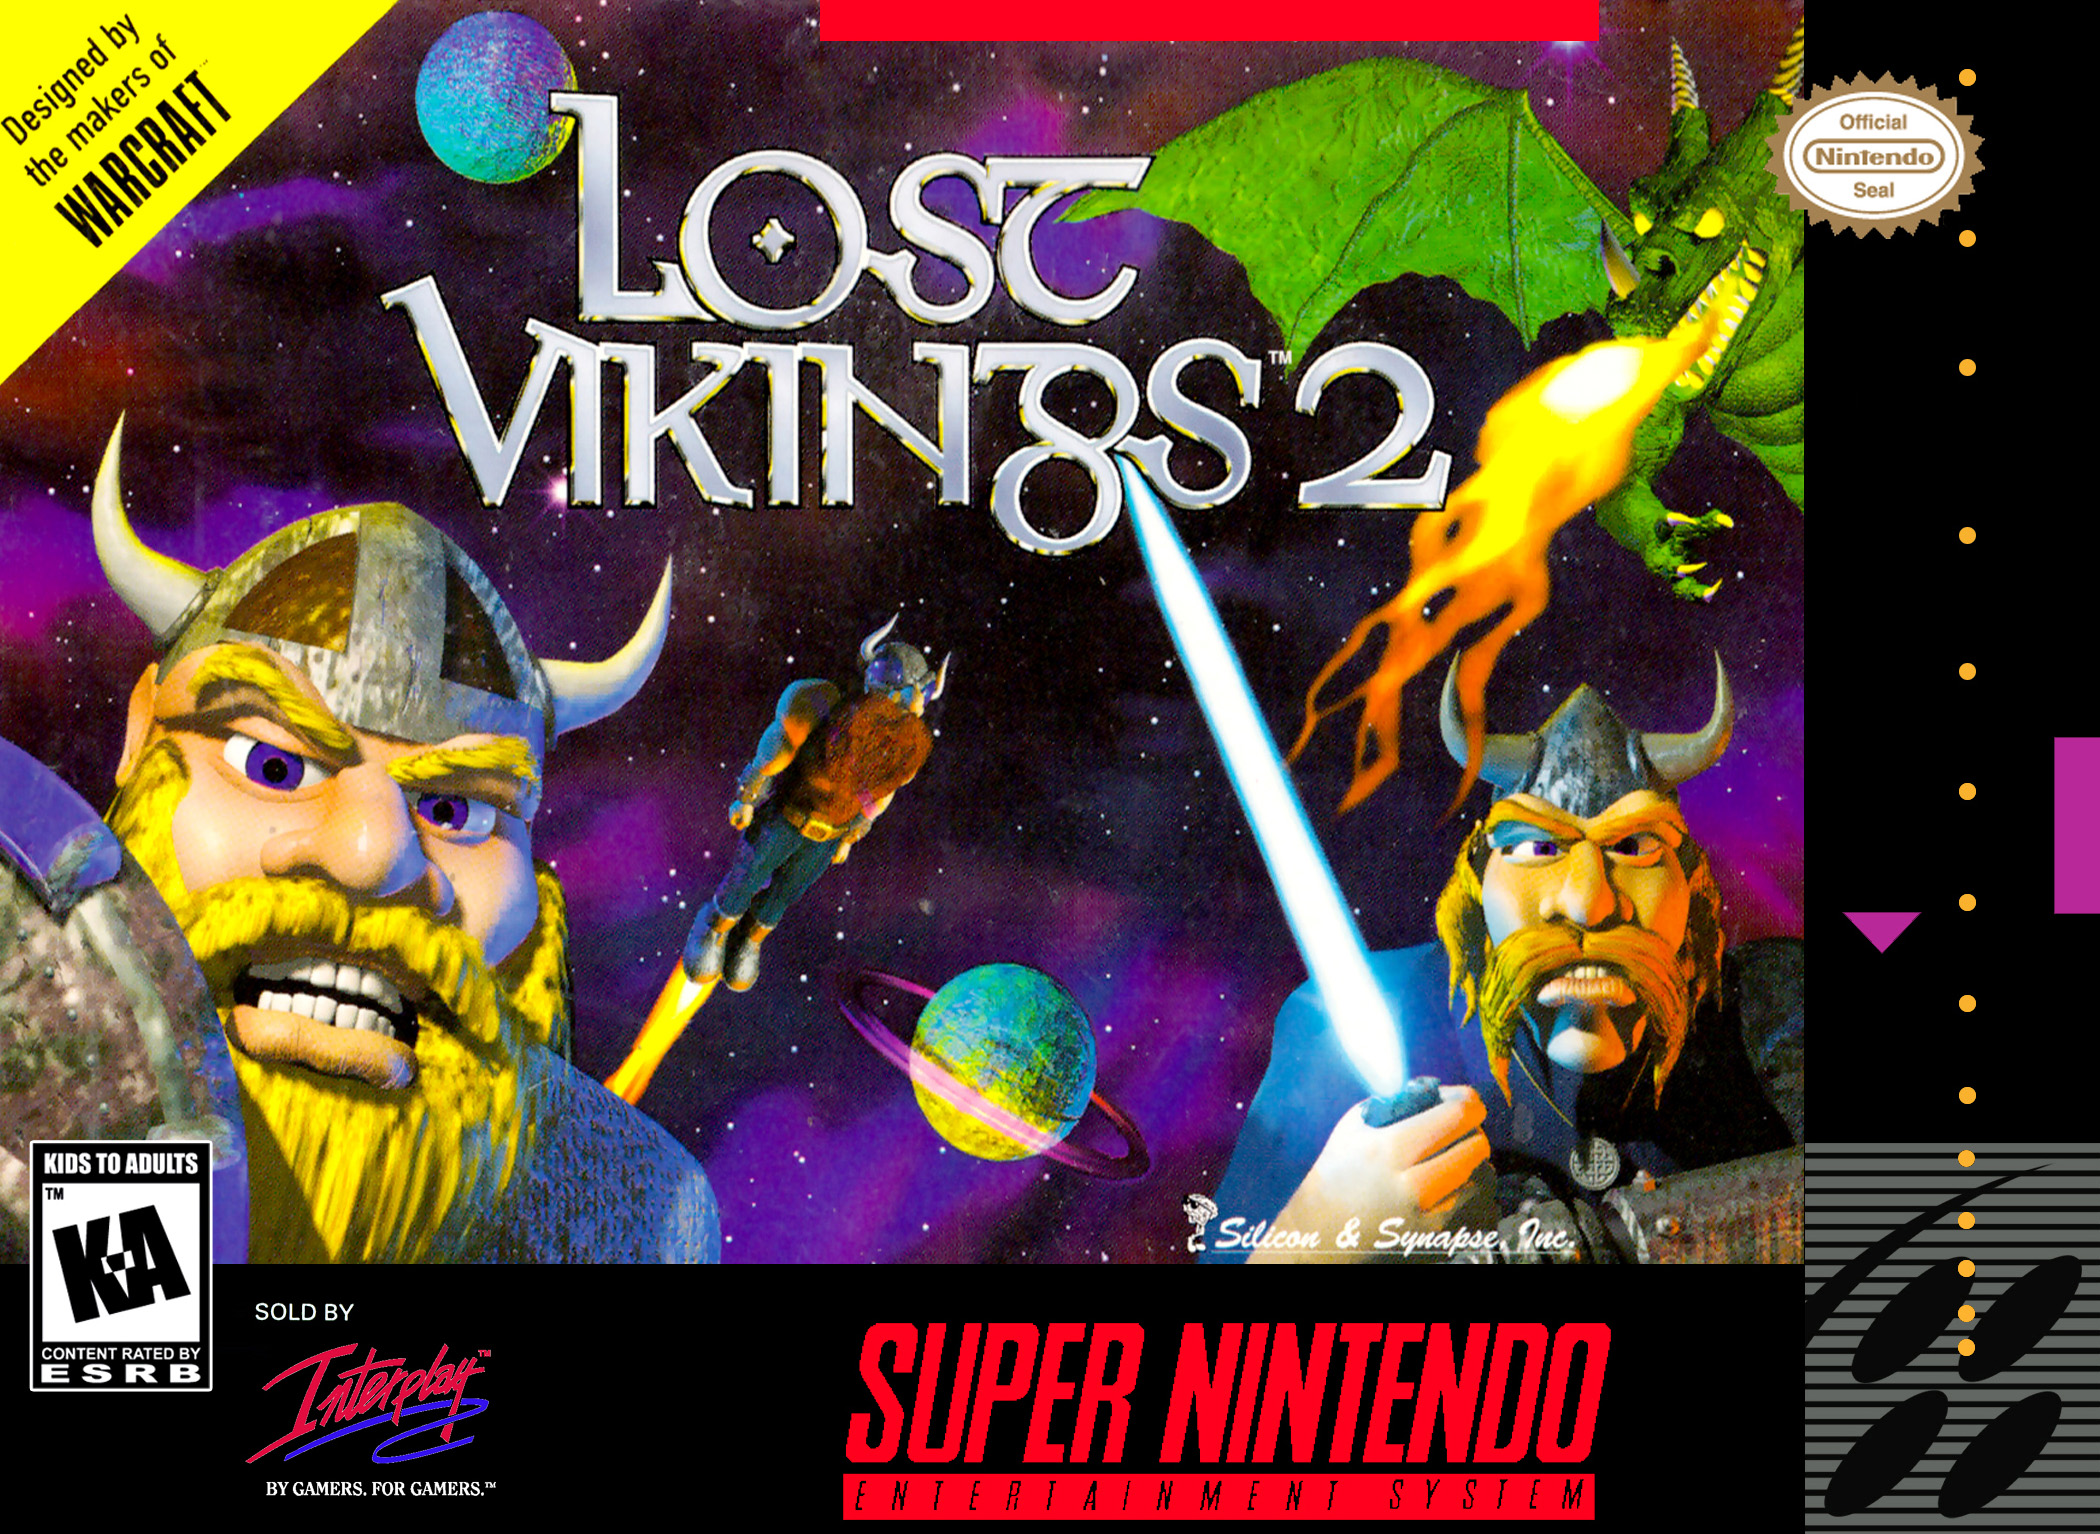 the lost vikings online